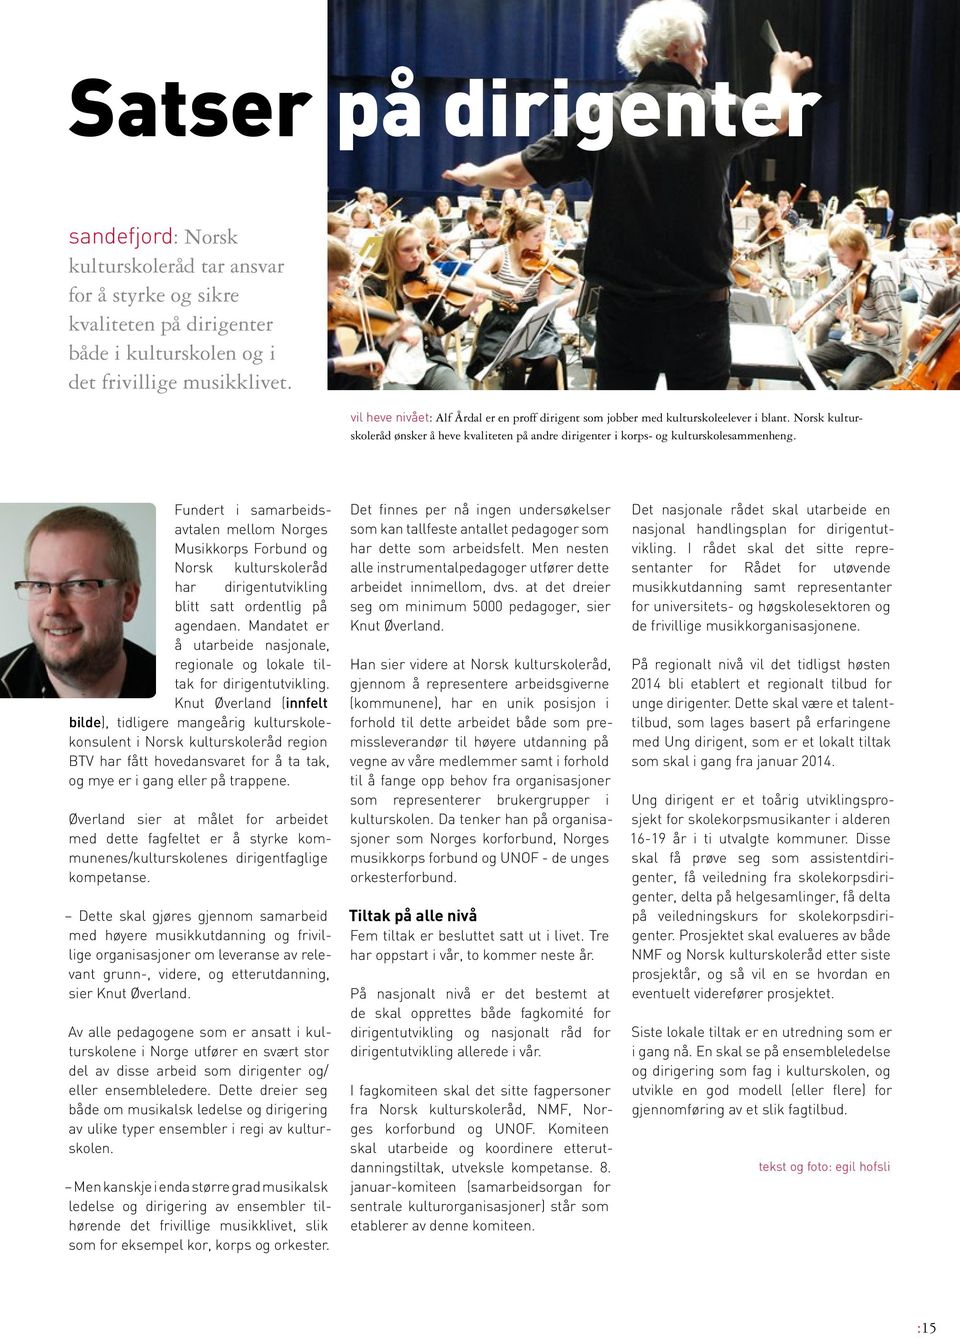 Fundert i samar beidsavtalen mellom Norges Musikkorps Forbund og Norsk kultur skoleråd har dirigentutvikling blitt satt ordentlig på agendaen.